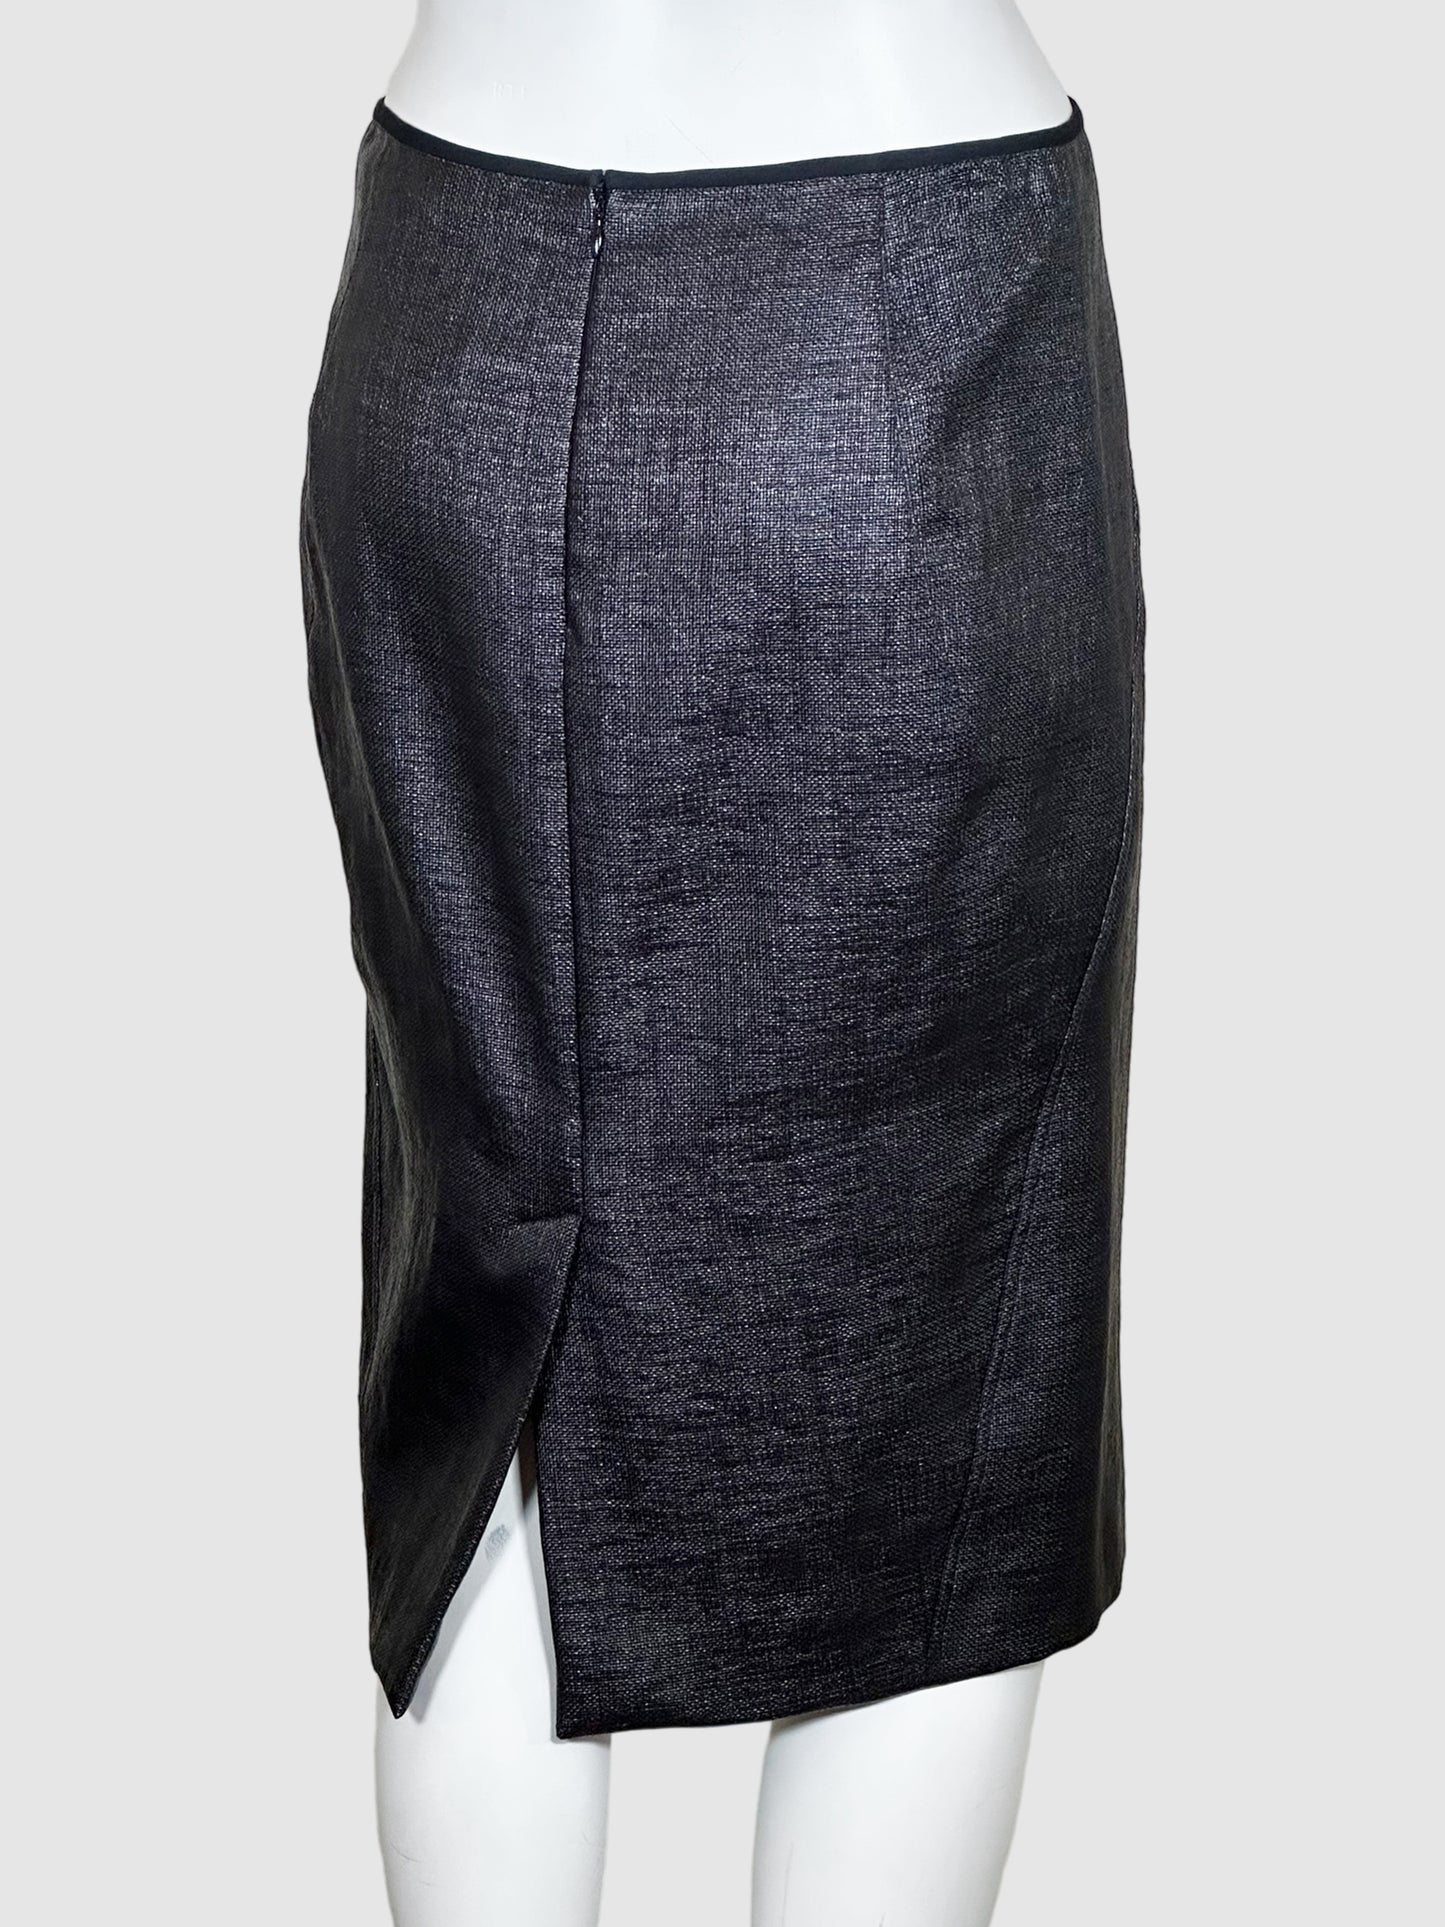 Donna Karan Pencil Skirt - Size 4